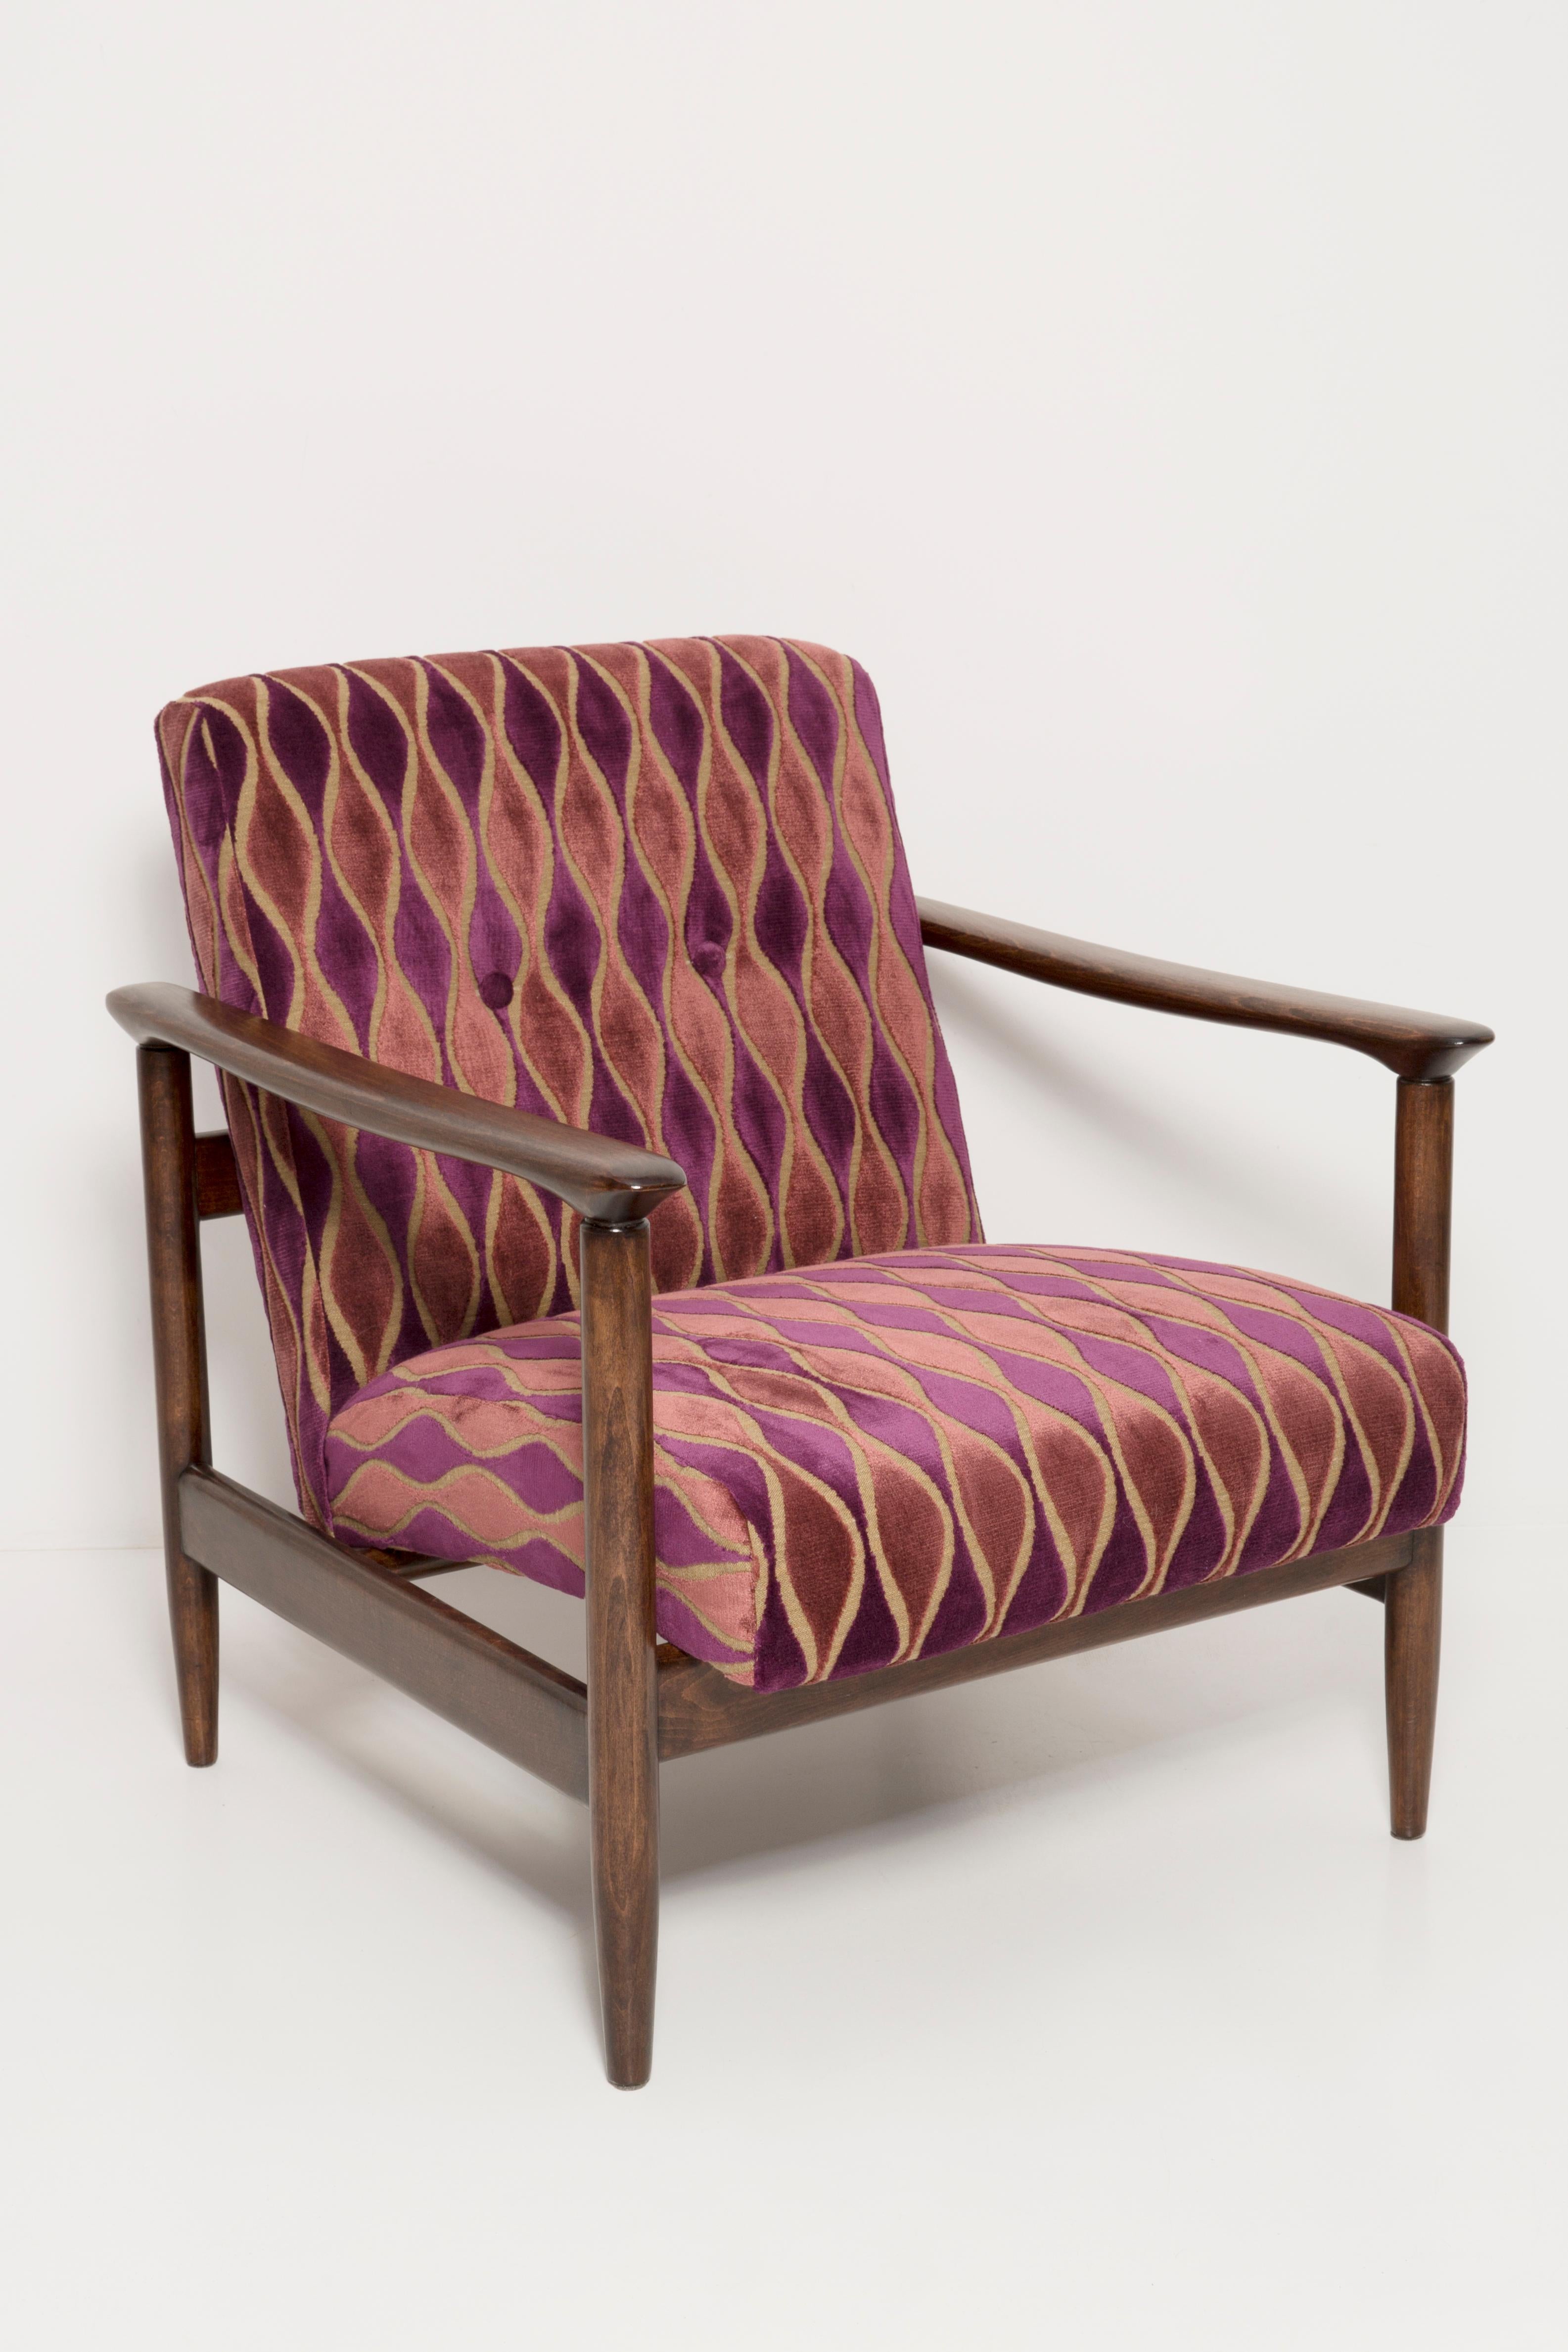 Magnifiques fauteuils et tabourets en velours rose GFM-142, conçus par Edmund Homa, architecte polonais, concepteur de Design/One Arts et d'architecture d'intérieur, professeur à l'Académie des Beaux-Arts de Gdansk. 

Le fauteuil a été fabriqué